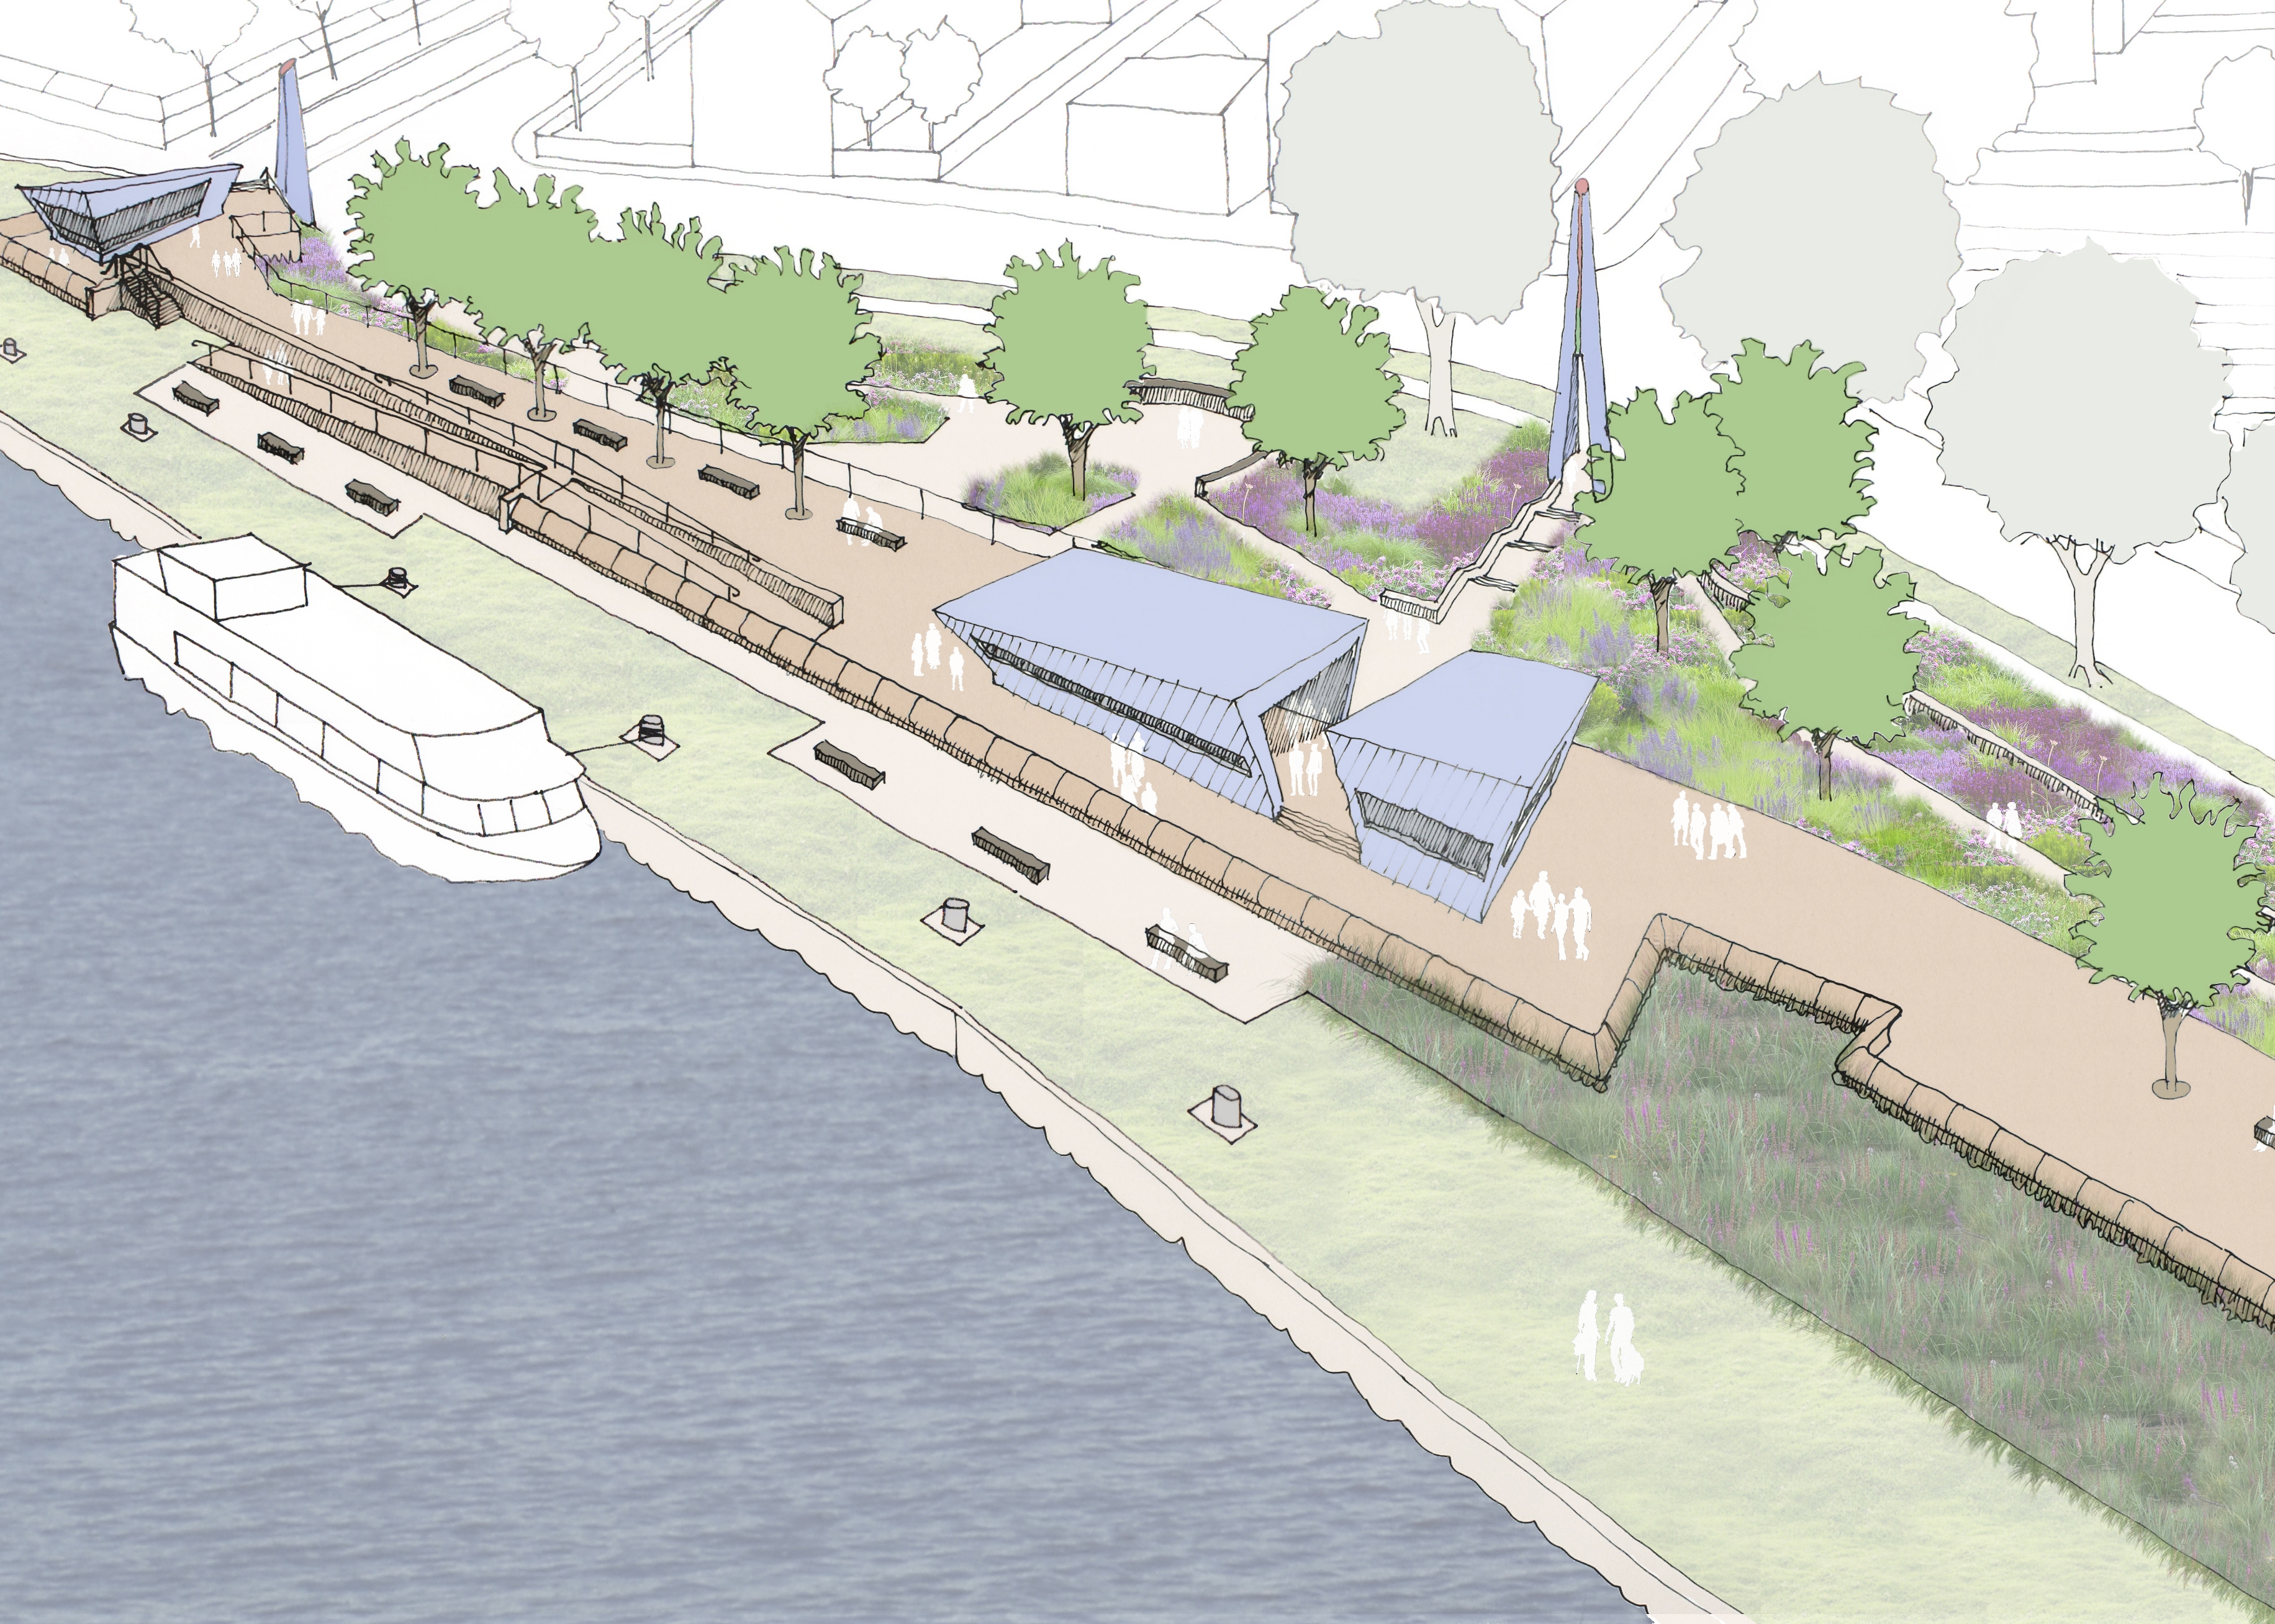 Concept design for Goole Riverside Park